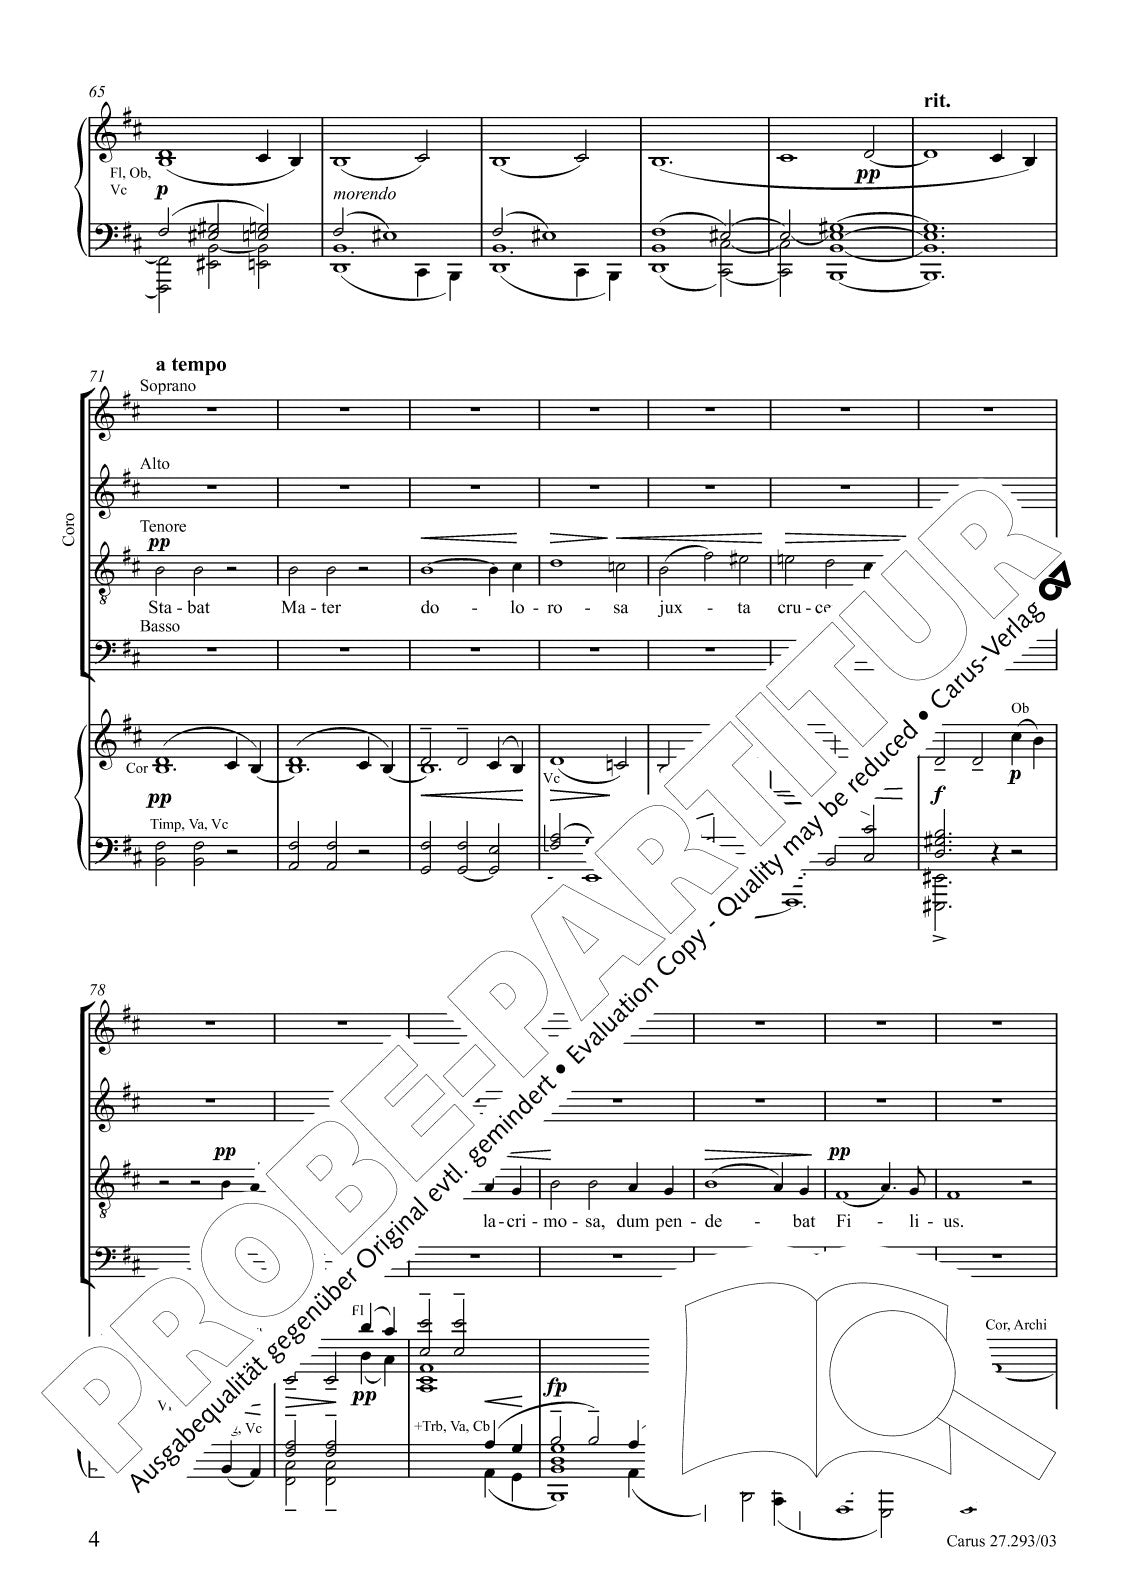 Dvořák: Stabat Mater, Op. 58